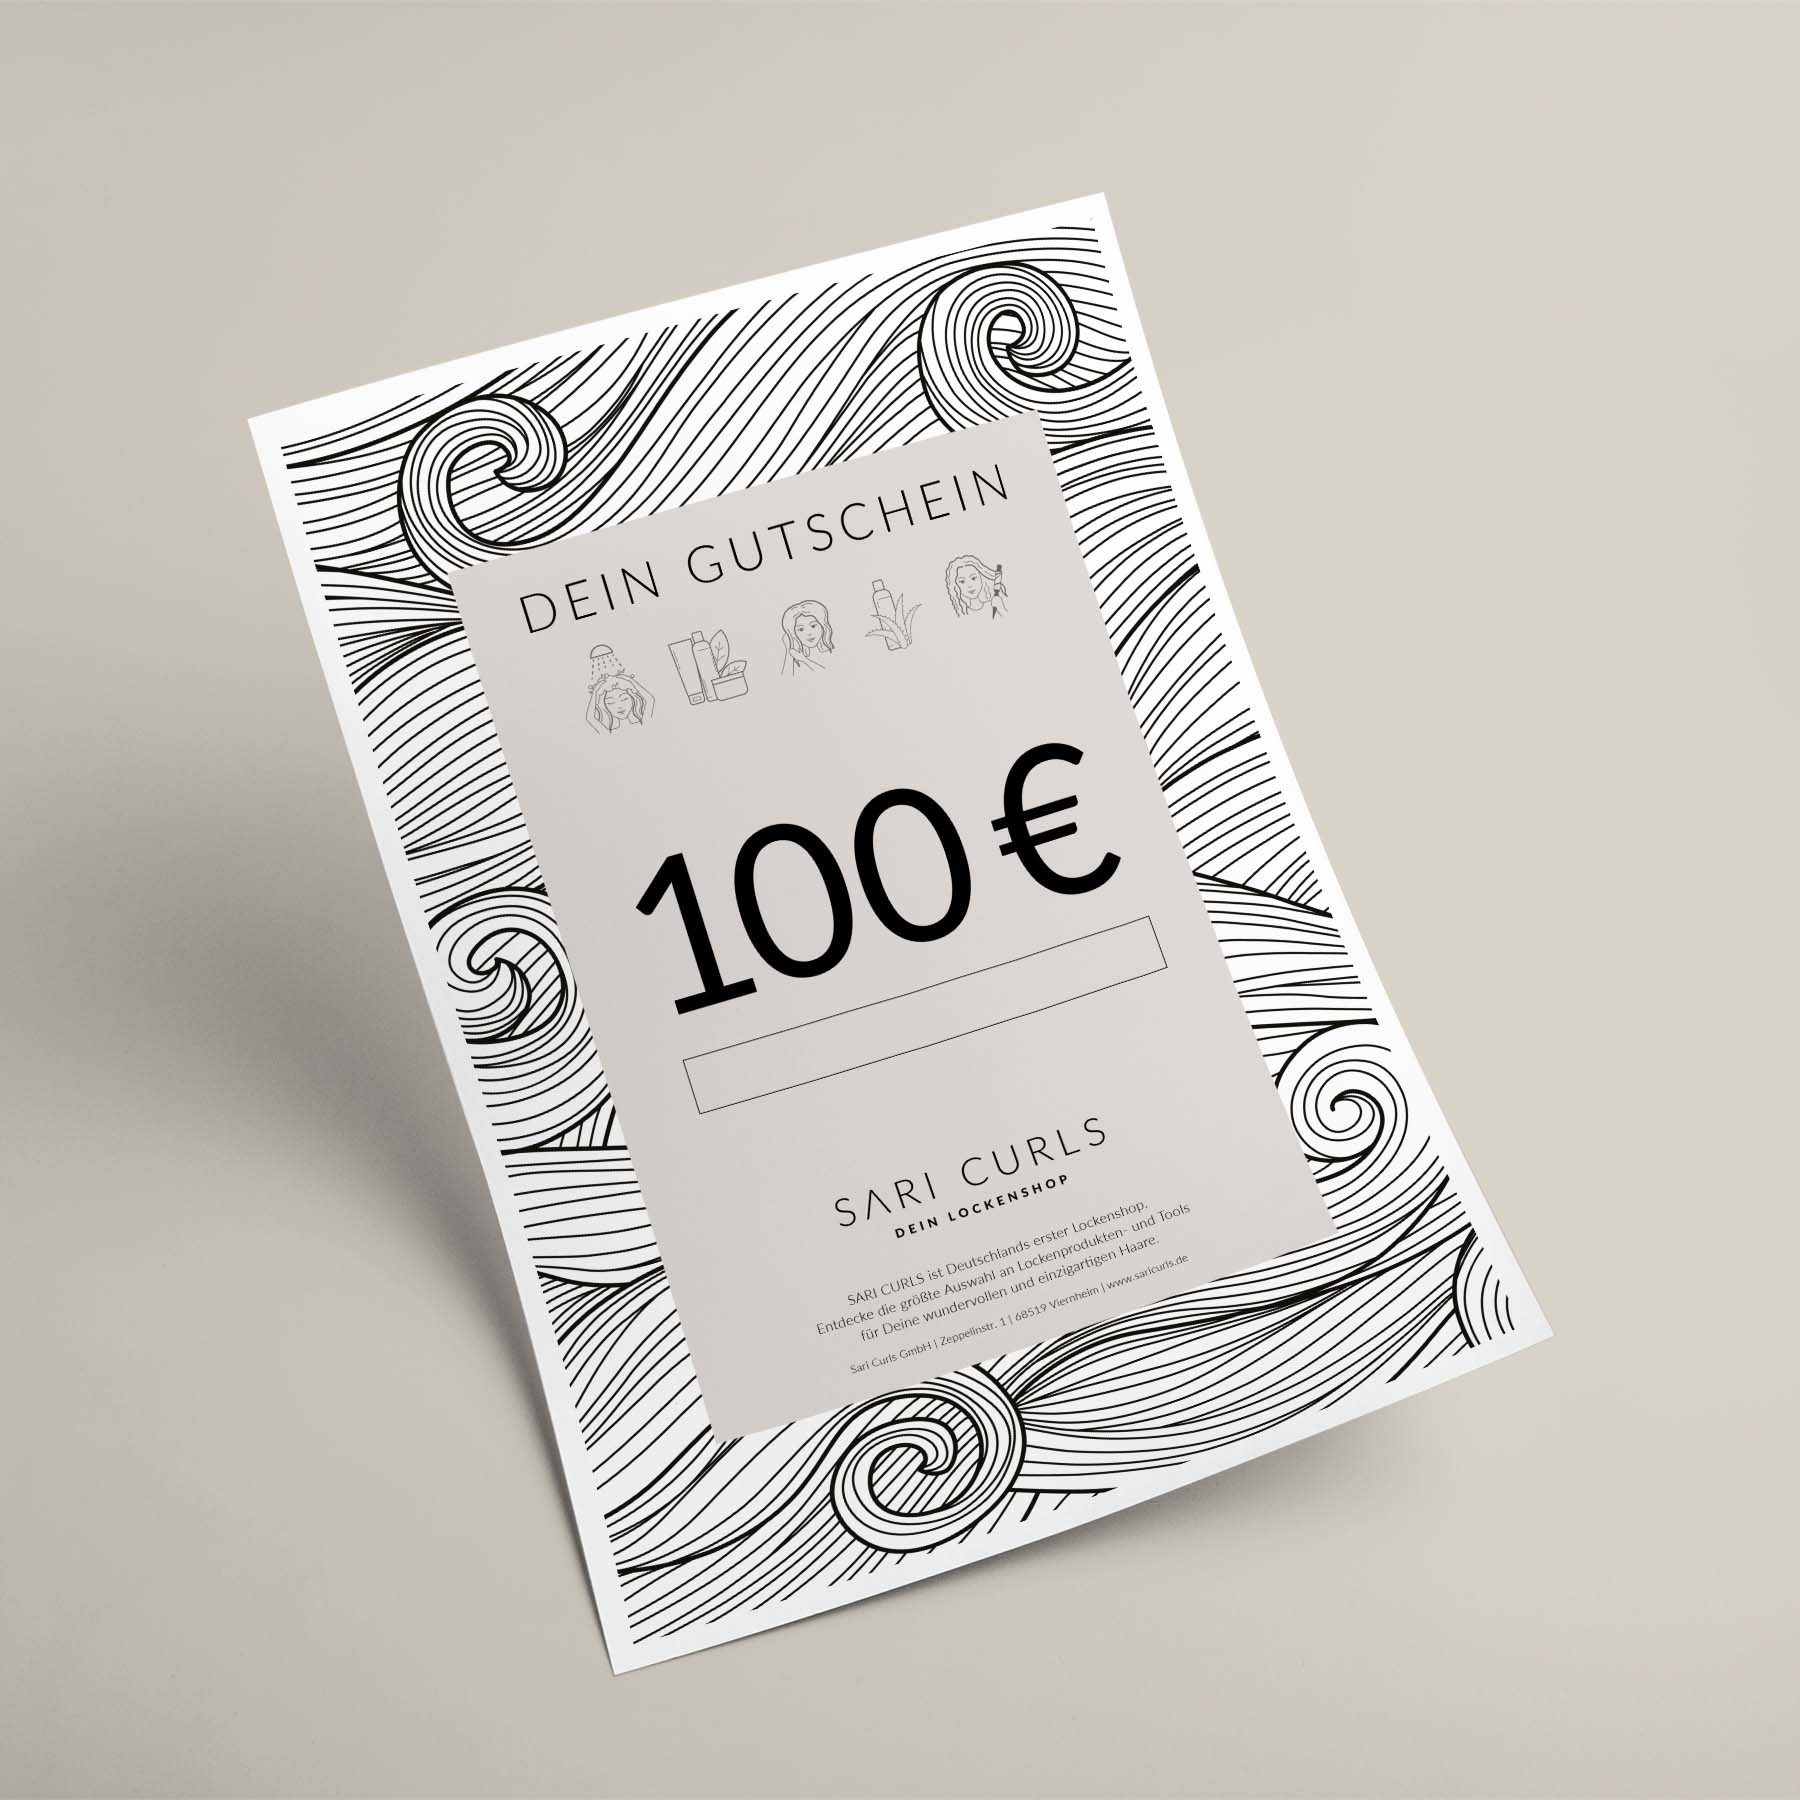 Gutschein per E-Mail | 100 Euro